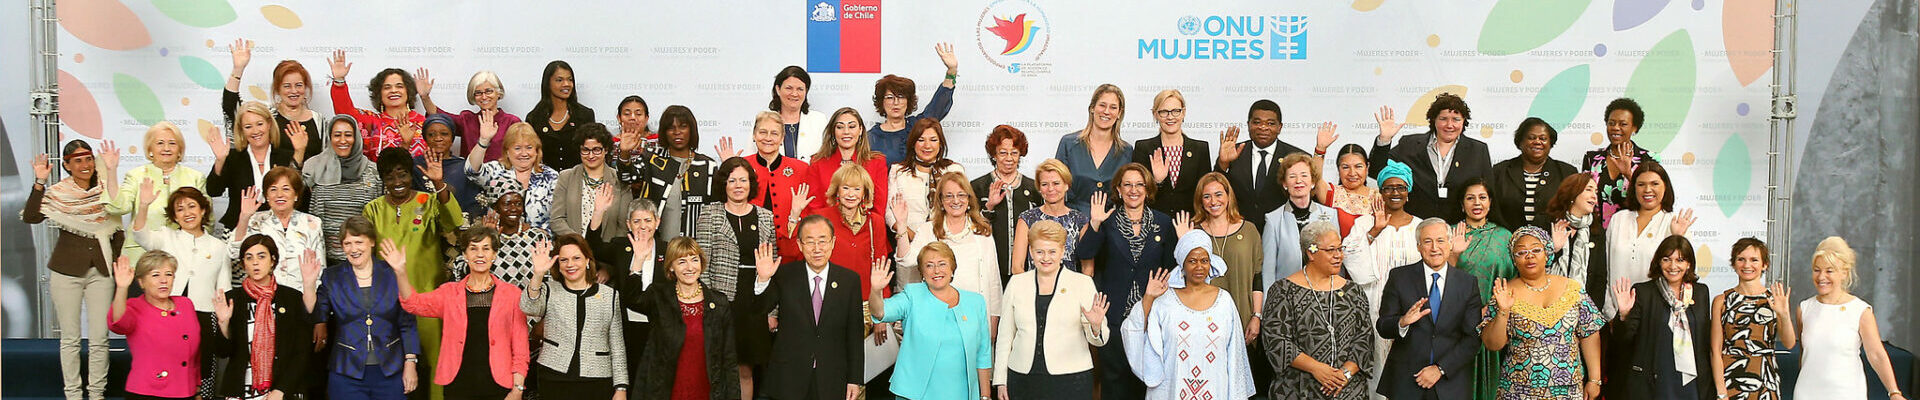 Frauen an der Macht und in der Entscheidungsfindung - Aufbau einer anderen Welt. Credits: UN Women/Mario Ruiz